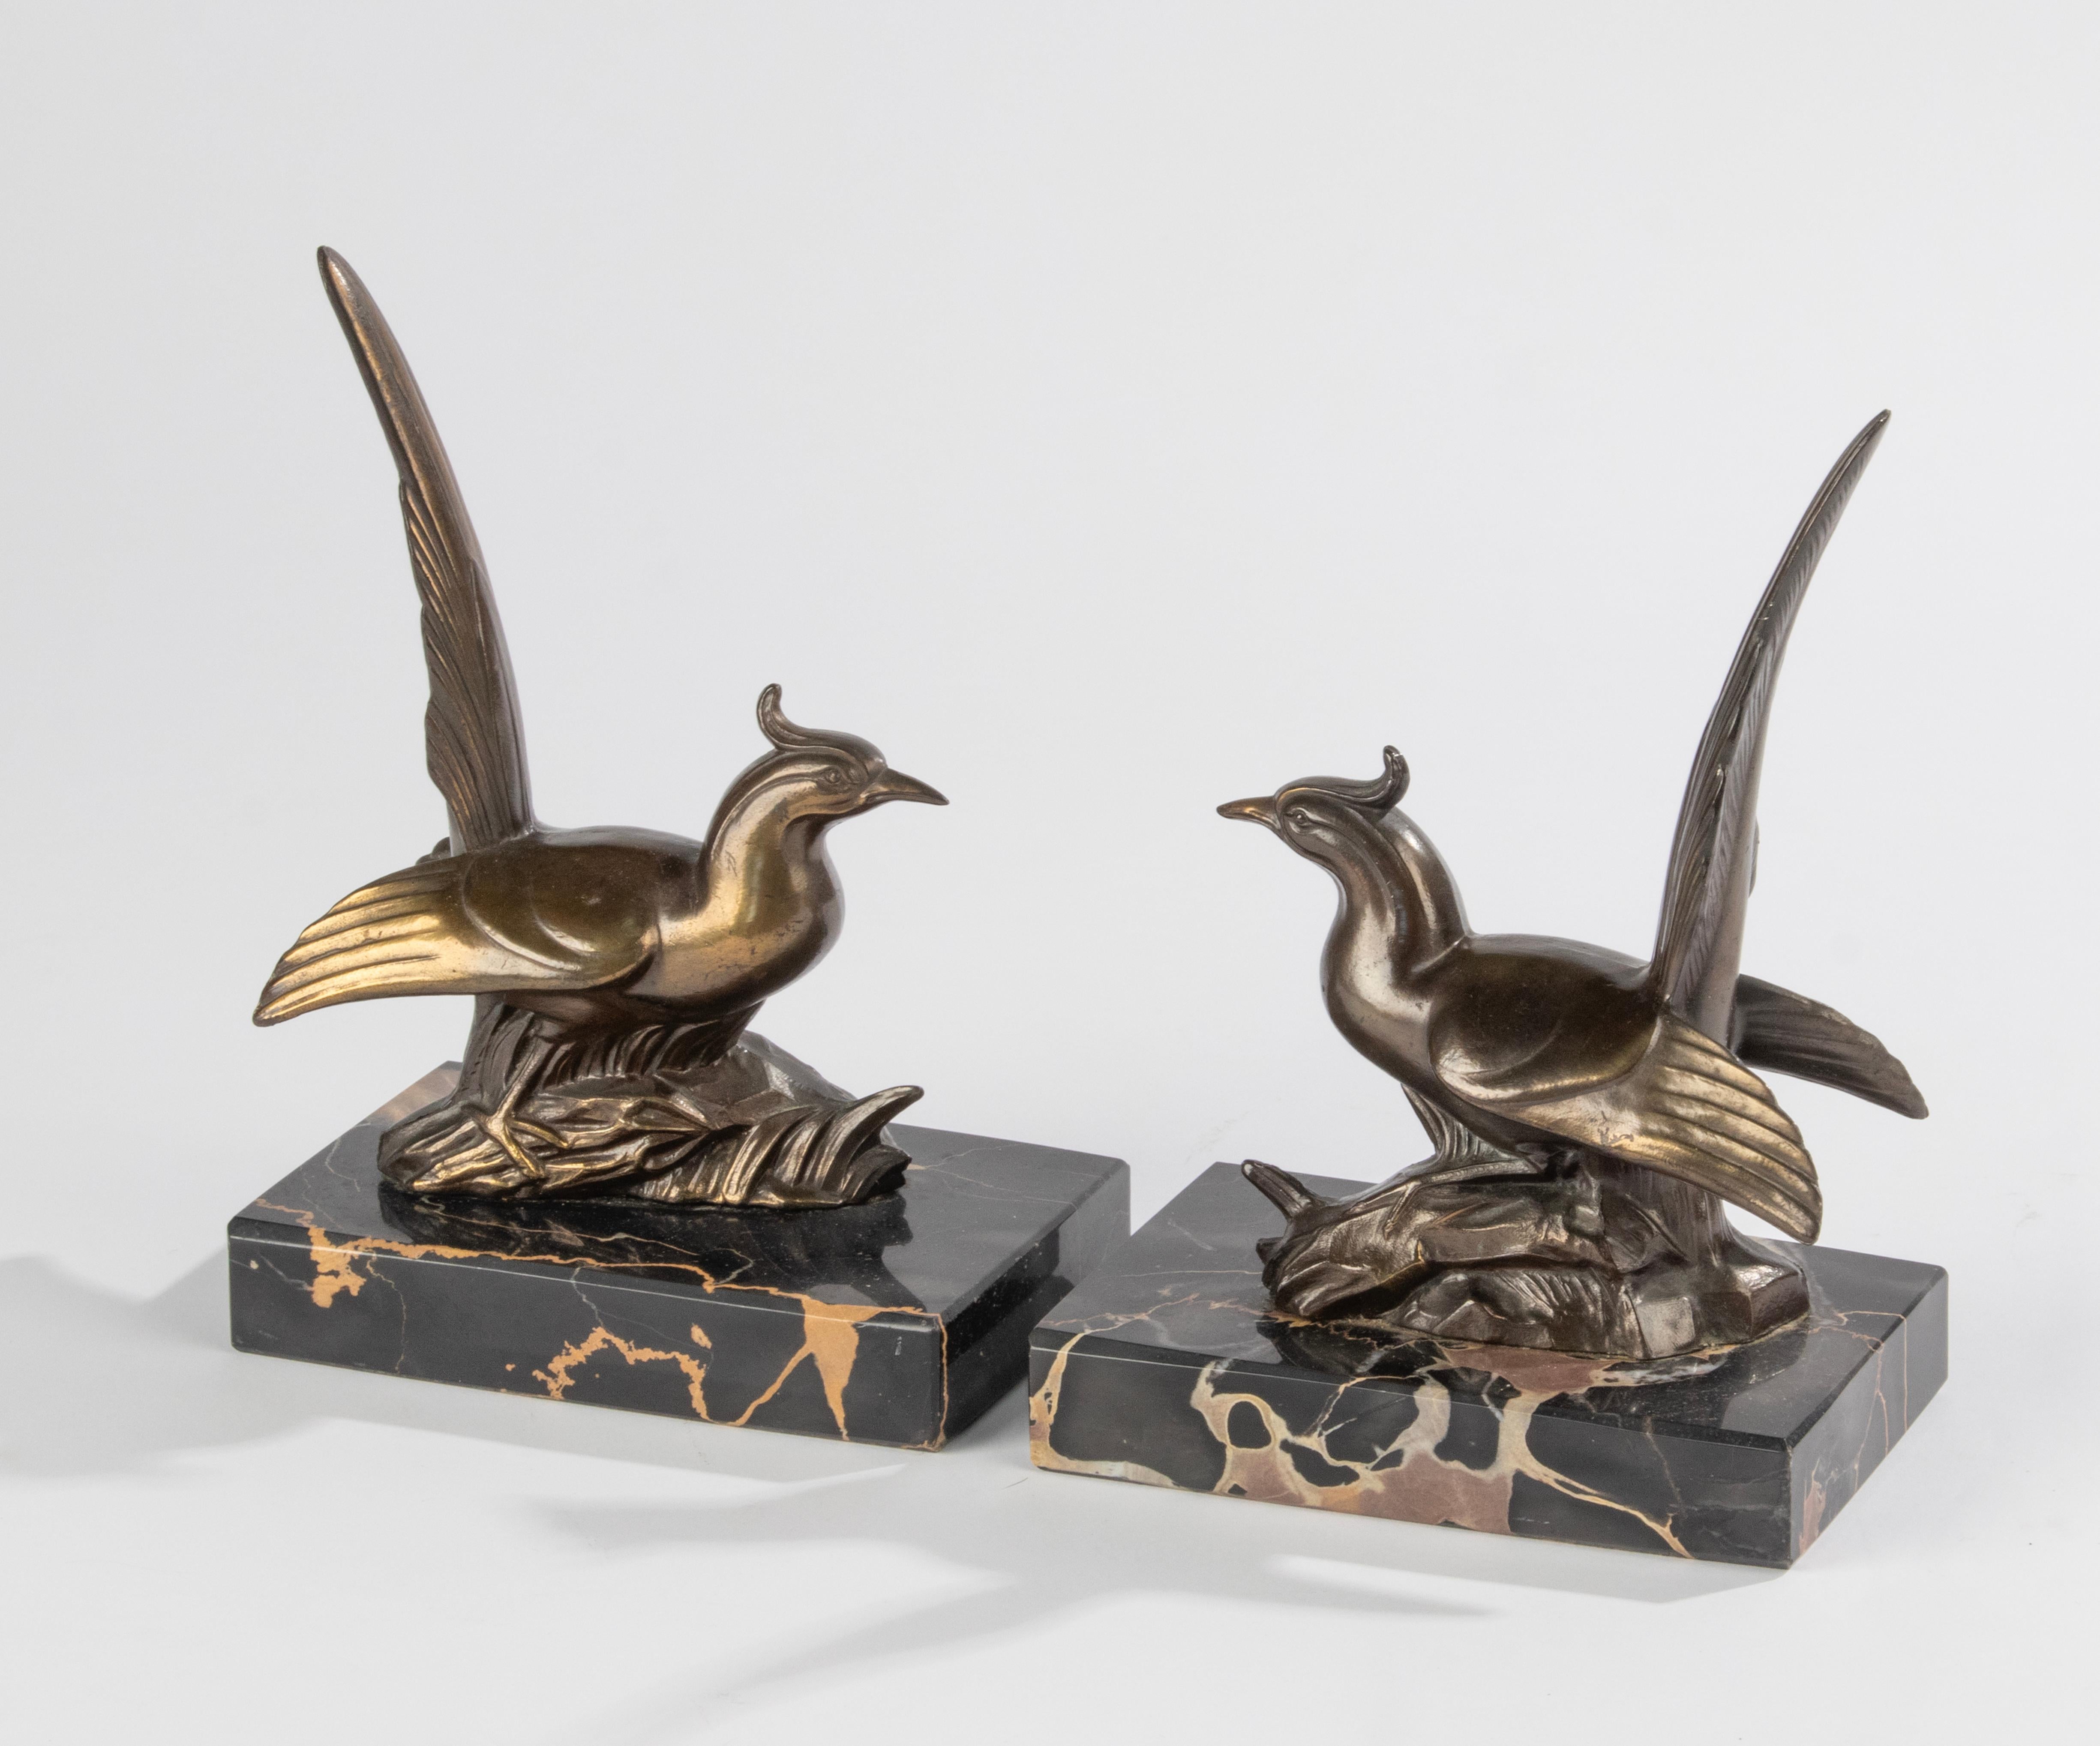 Ein Paar Buchstützen aus der Zeit des Art déco, mit Skulpturen von Fasanenvögeln. Die Figuren sind aus bronzefarben patiniertem Zinn (Zinklegierung) gefertigt. Die Sockel sind aus Porto Nero Marmor gefertigt. Alles in gutem Zustand. Hergestellt in